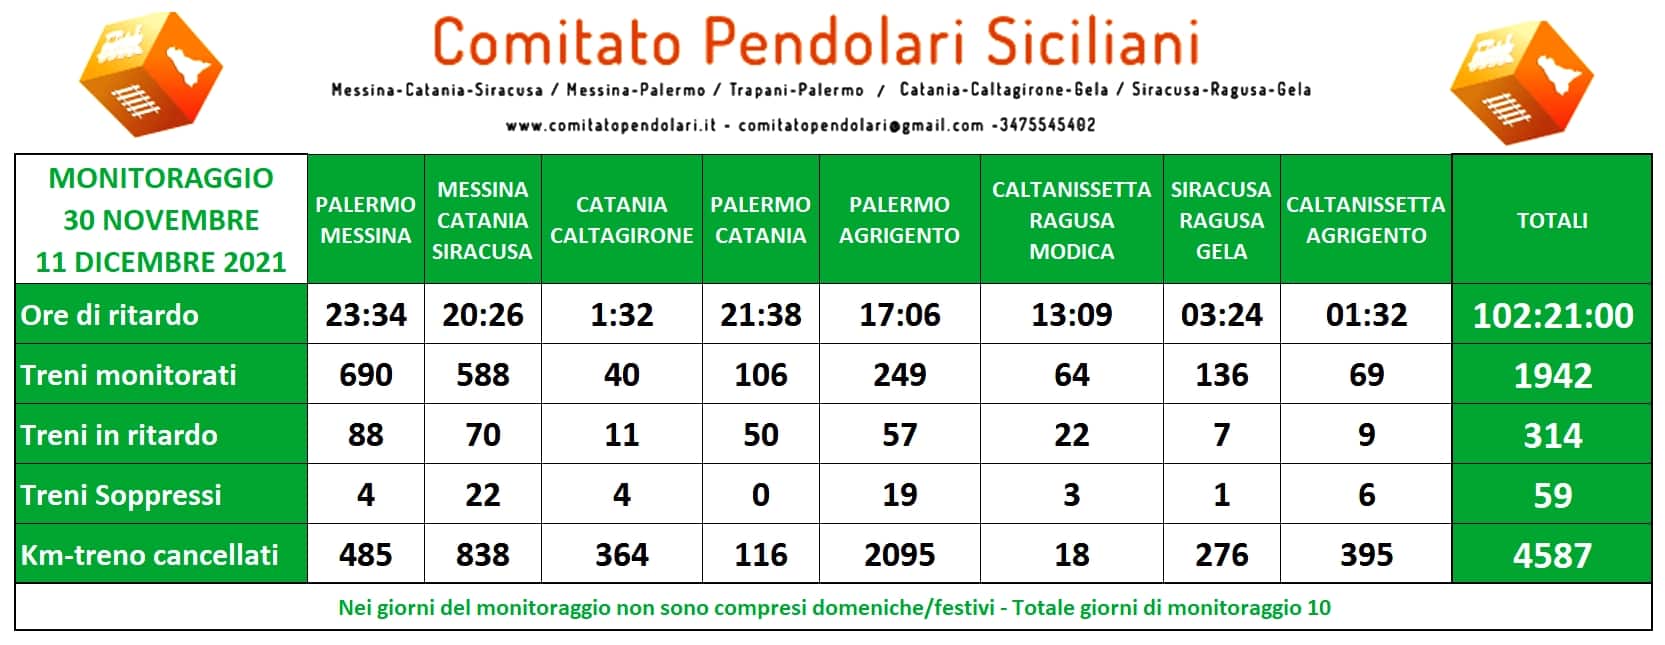 Pendolari Siciliani, aumento biglietti/abbonamenti e nuovo orario ferroviario 2021-2022 penalizzante